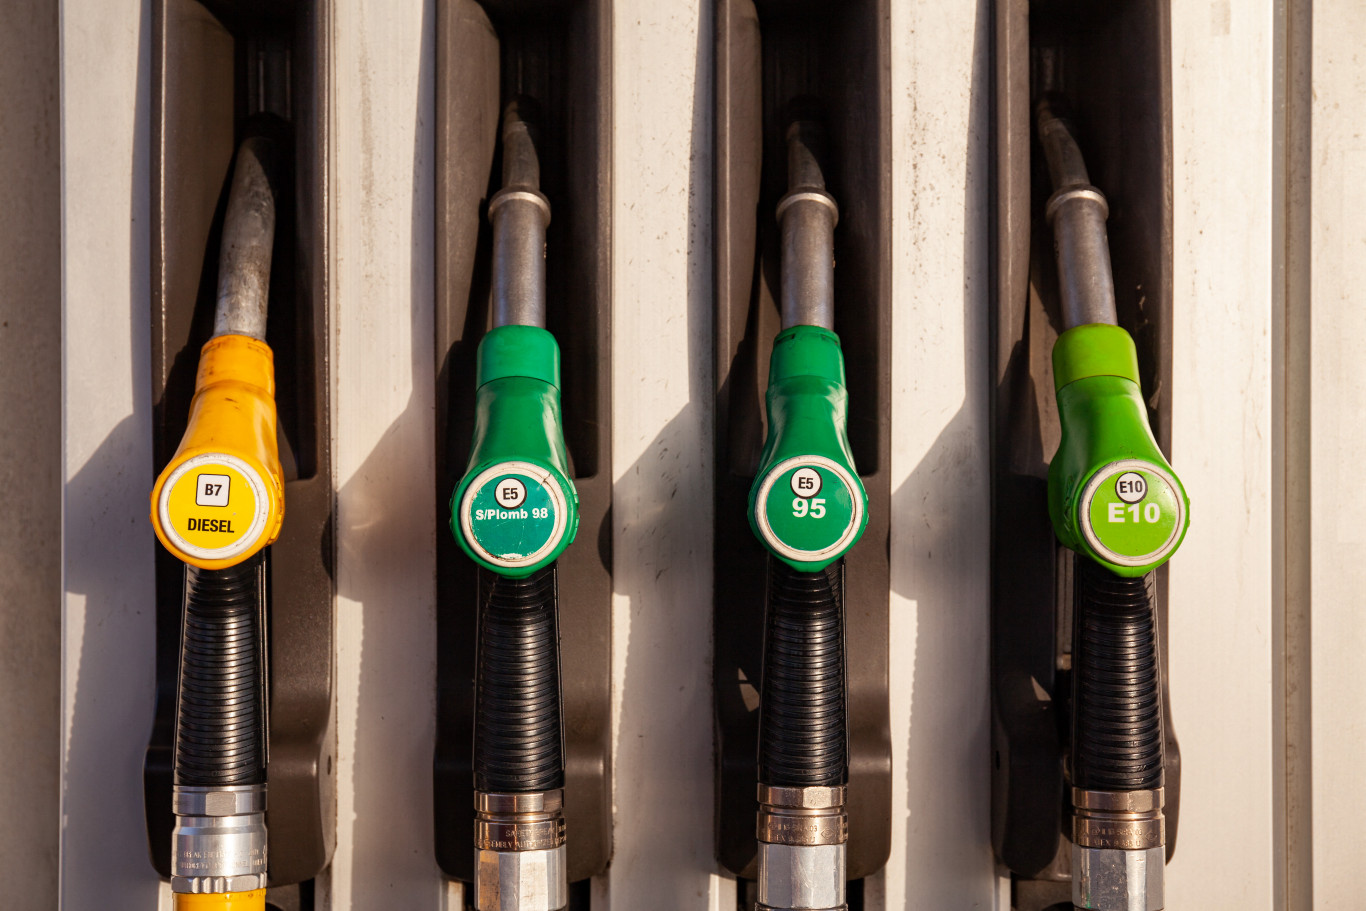 Veszteséges üzemelésre kényszeríti a benzinkereskedőket, a kormány által követelt árcsökkentés